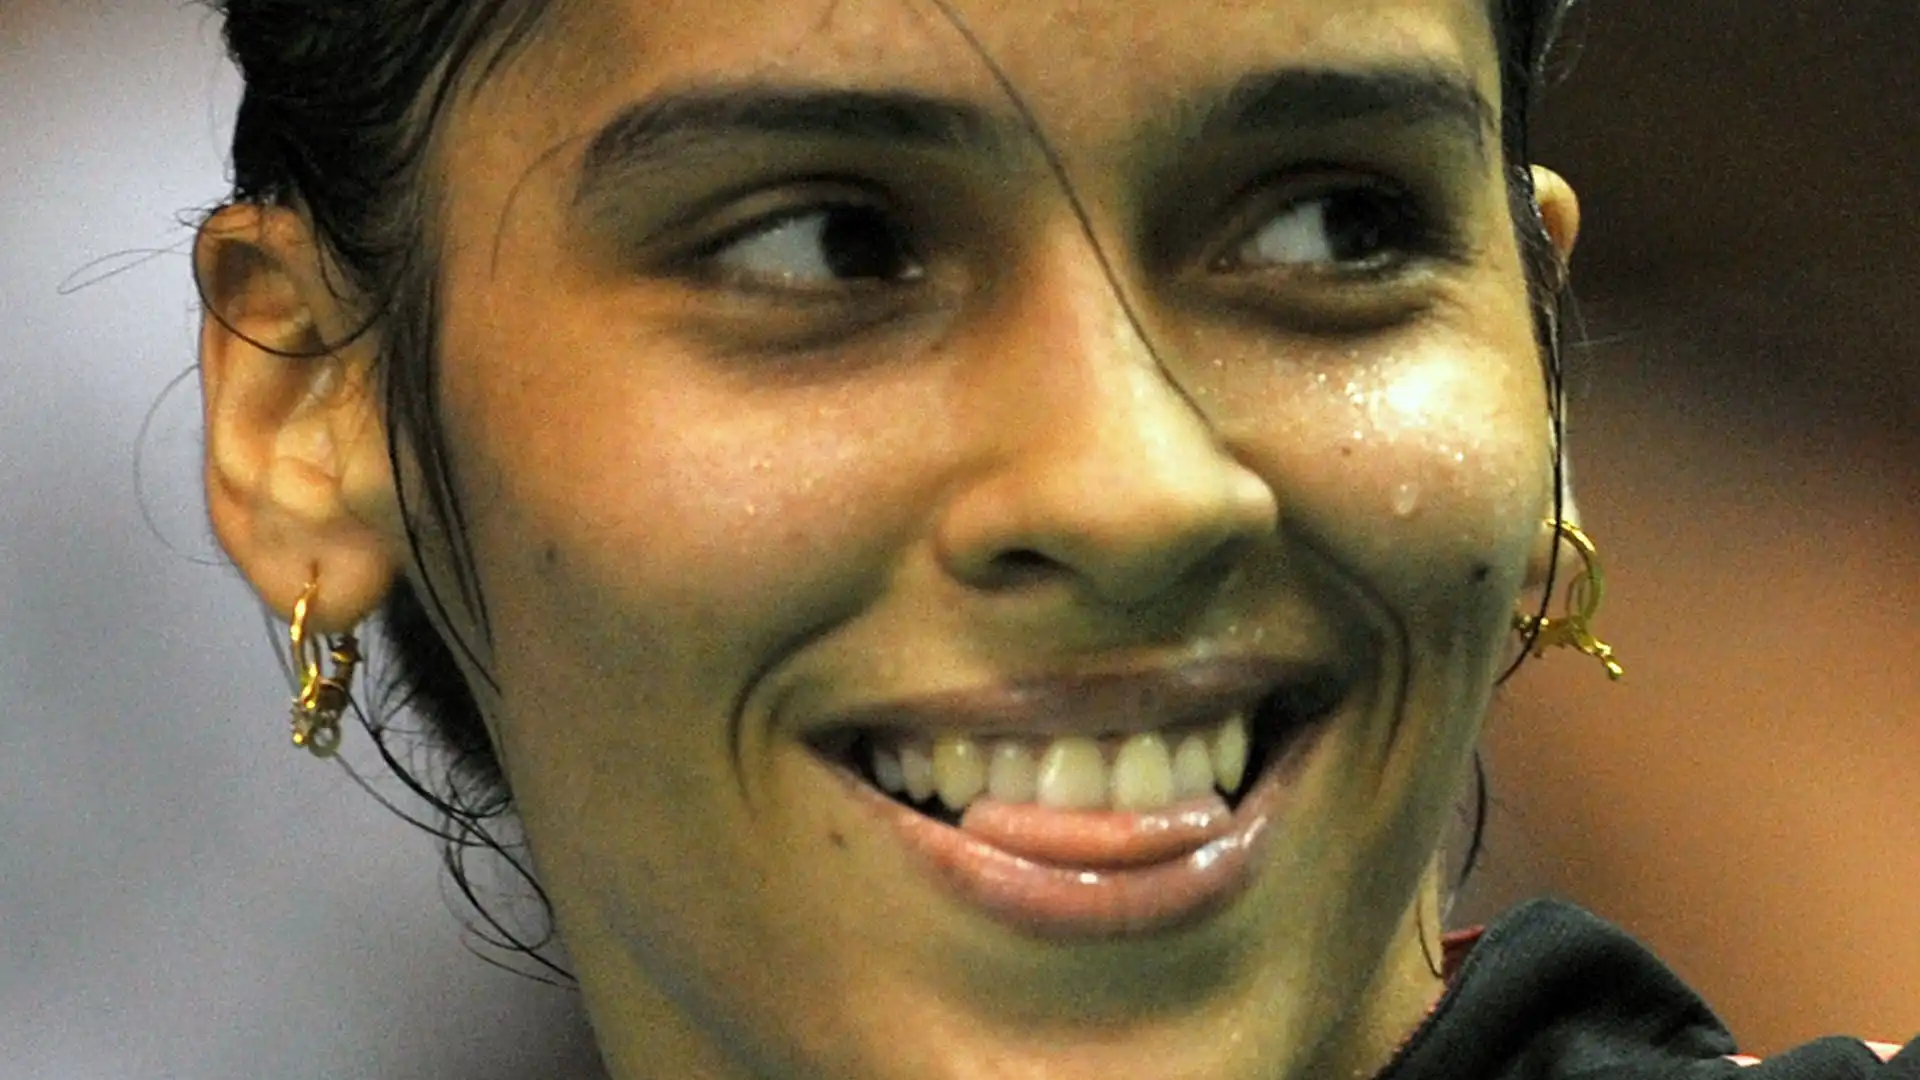 Nel 2015 è riuscita a raggiungere la n. 1 della classifica mondiale, diventando così l'unica giocatrice indiana a raggiungere questa impresa